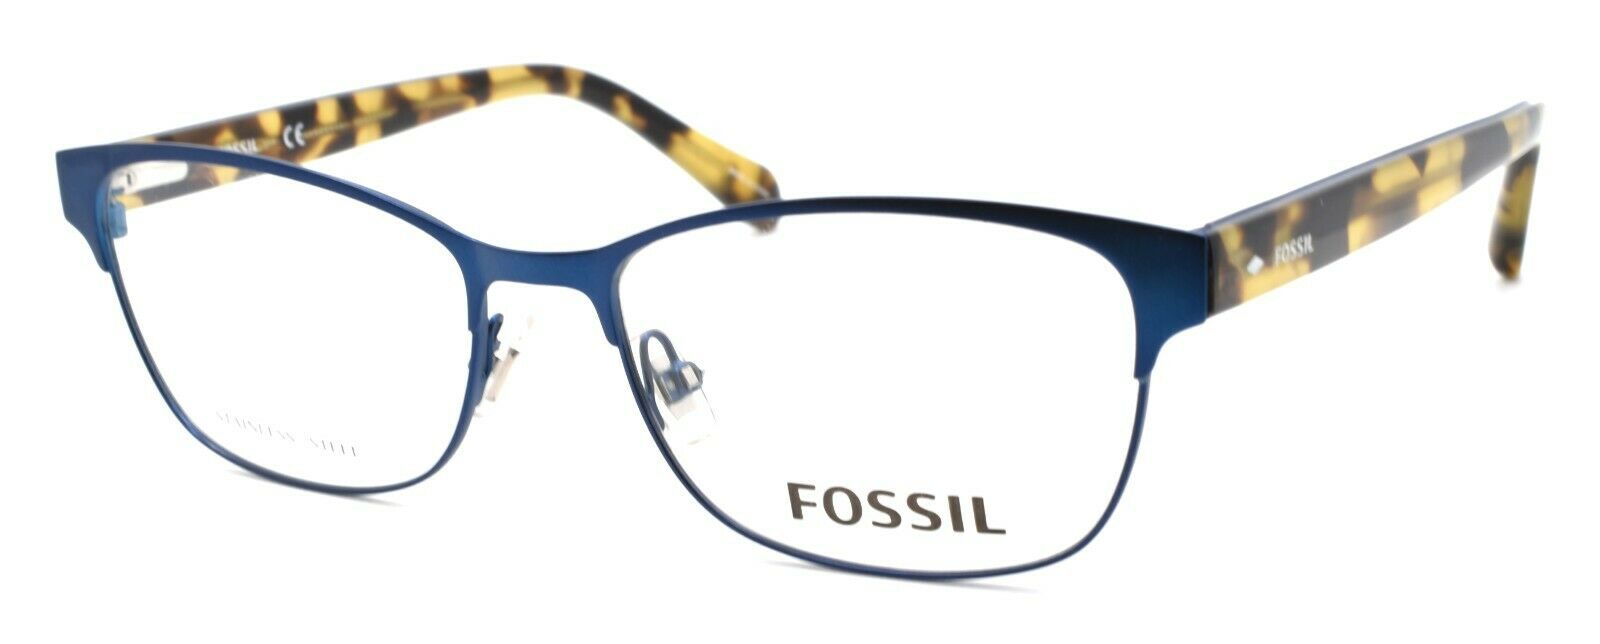 1-Fossil FOS 7007 PJP Women's Eyeglasses Frames 52-16-140 Blue + CASE-762753985248-IKSpecs